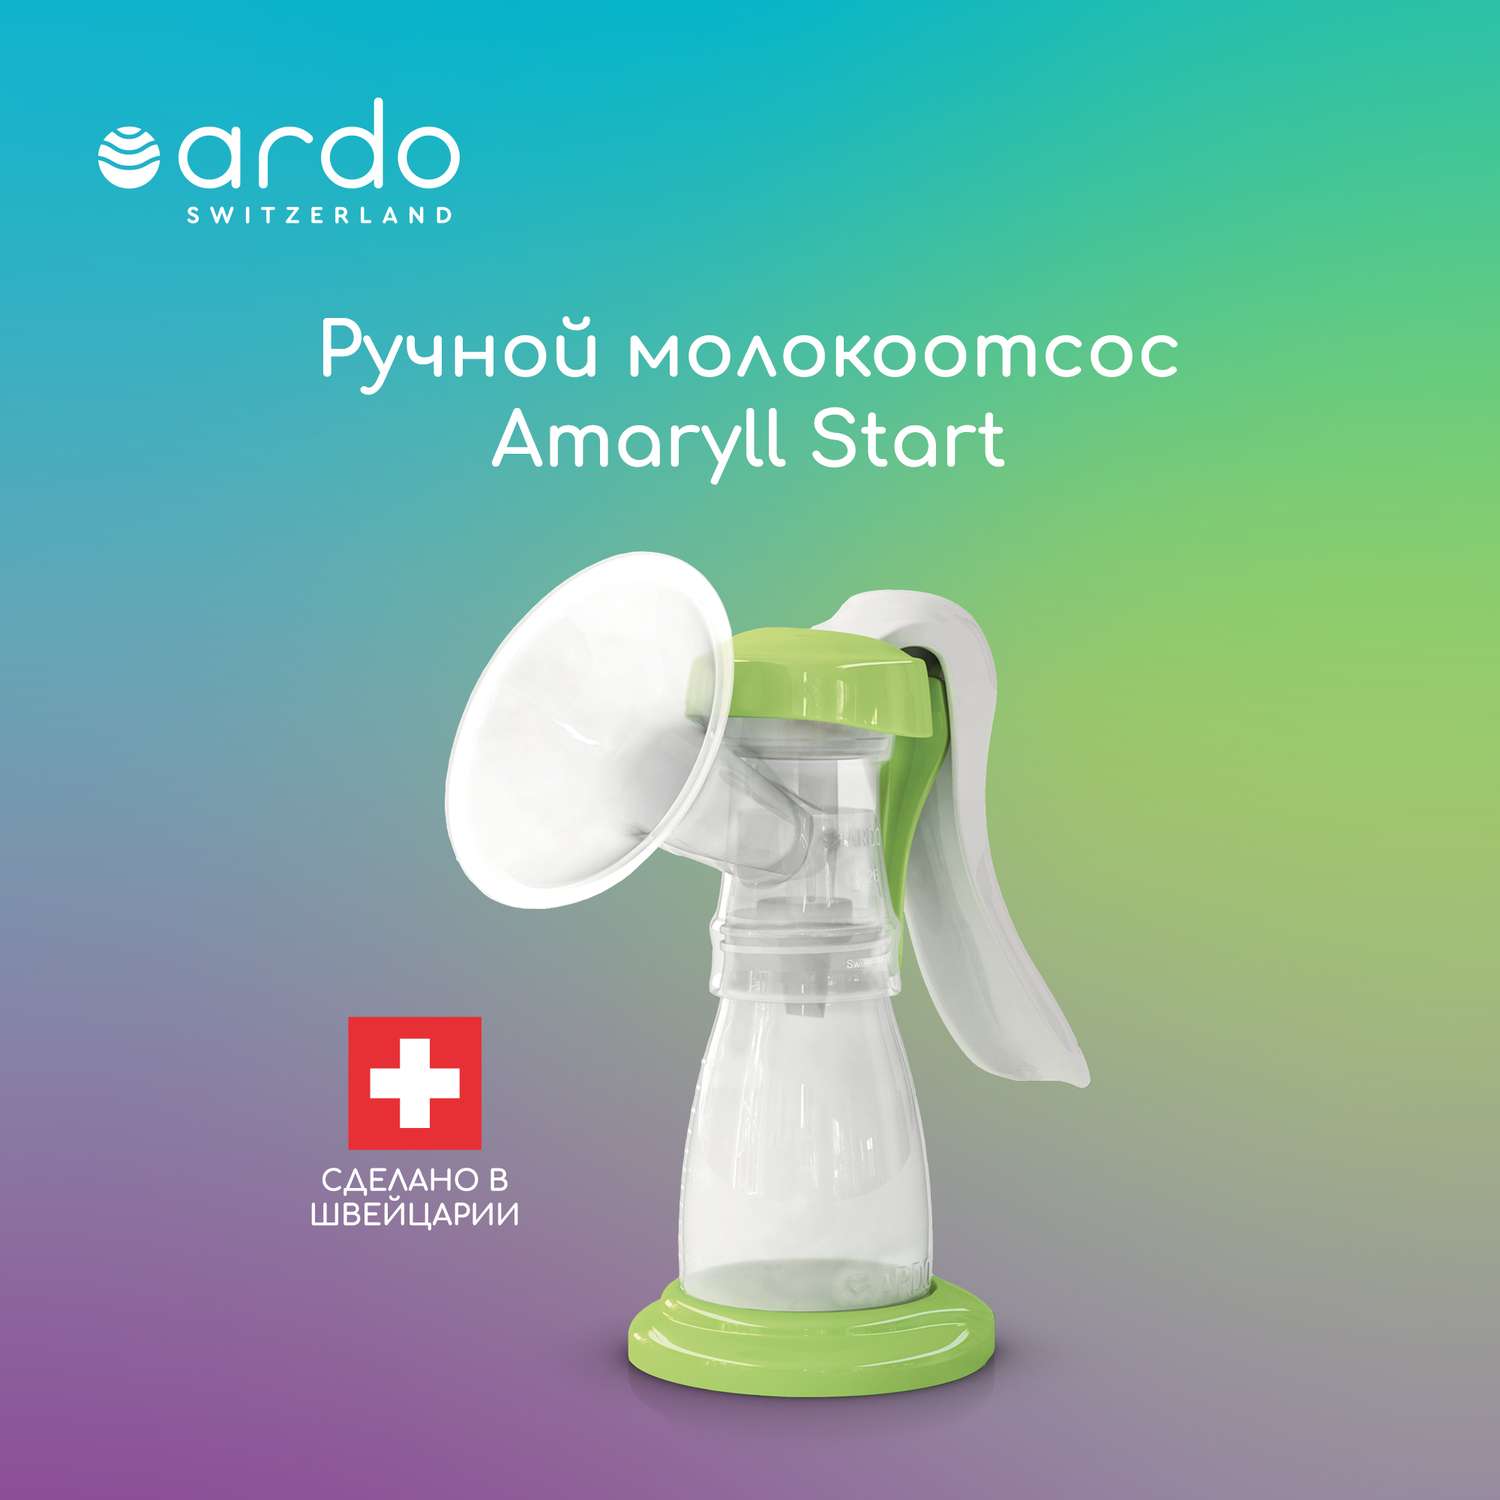 Молокоотсос ARDO ручной Amaryll Start базовая комплектация - фото 1